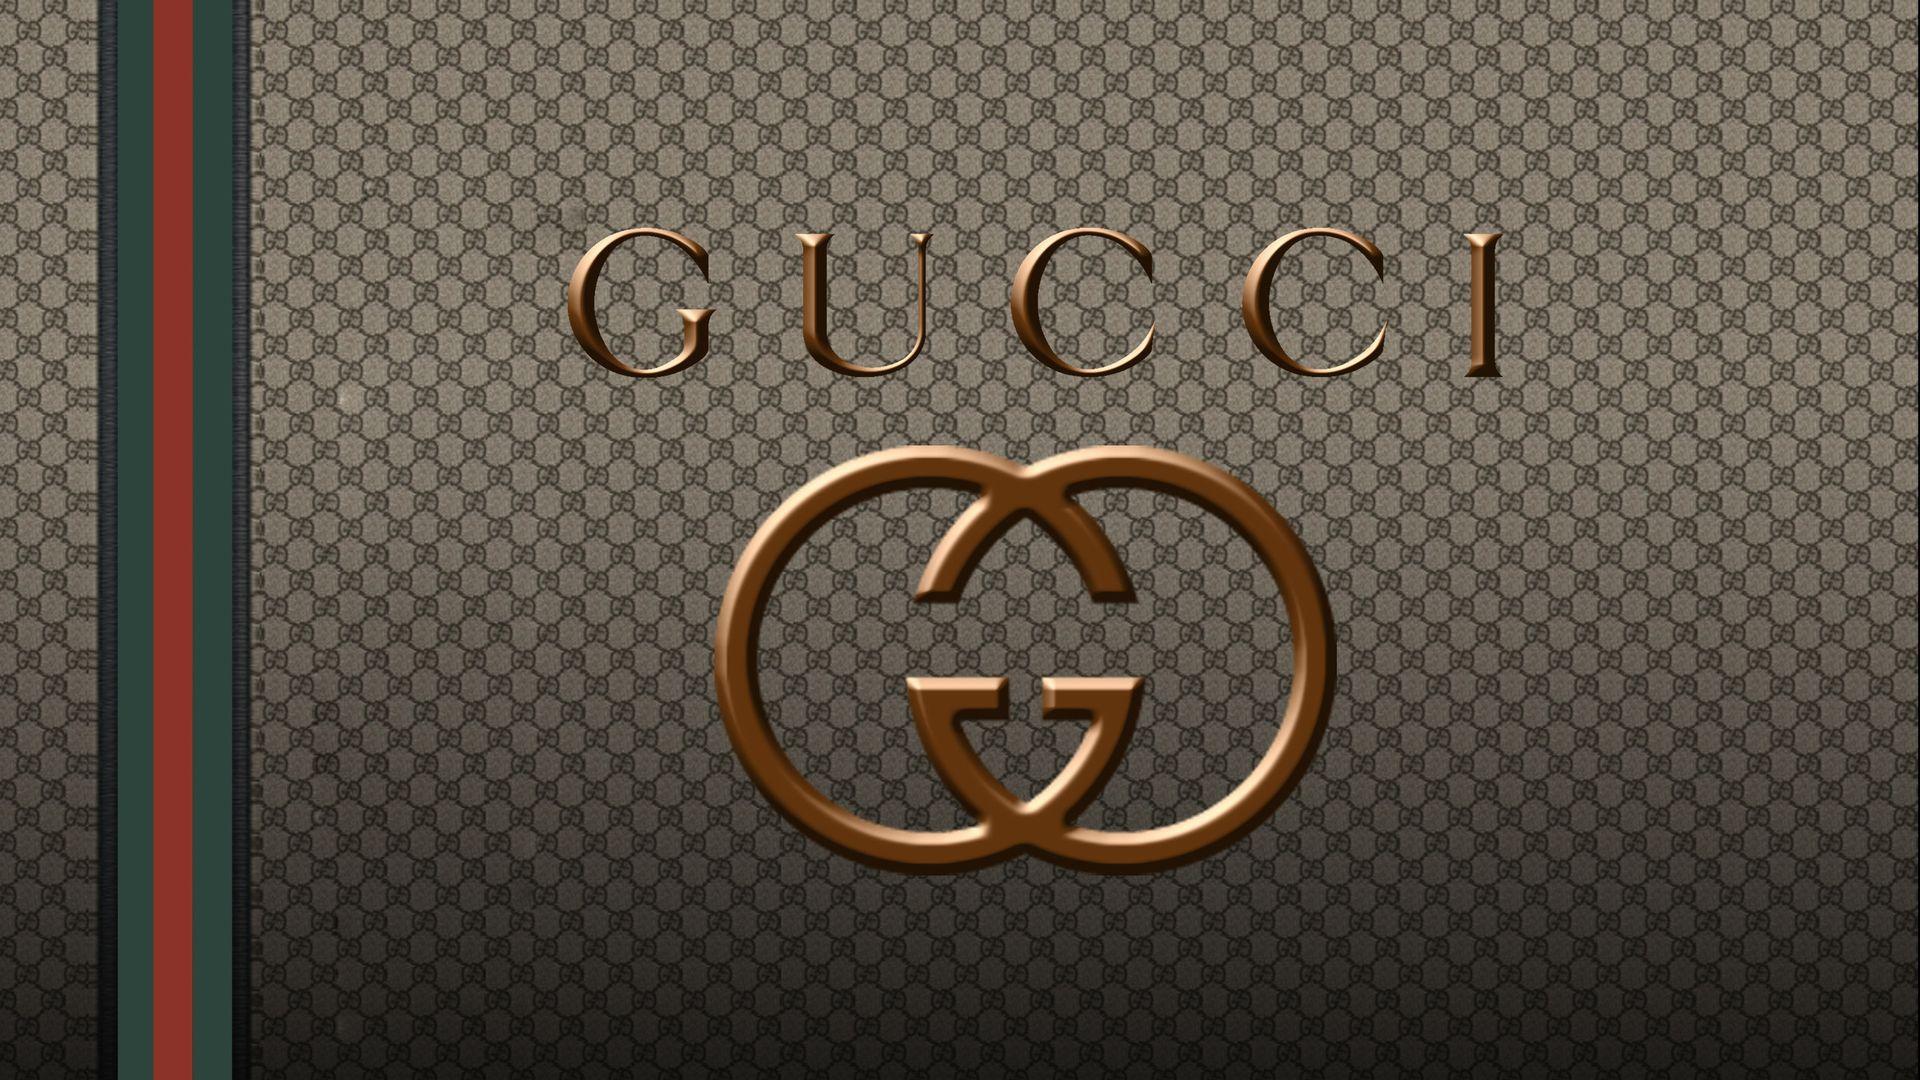 Gucci Car Logo Wallpaper